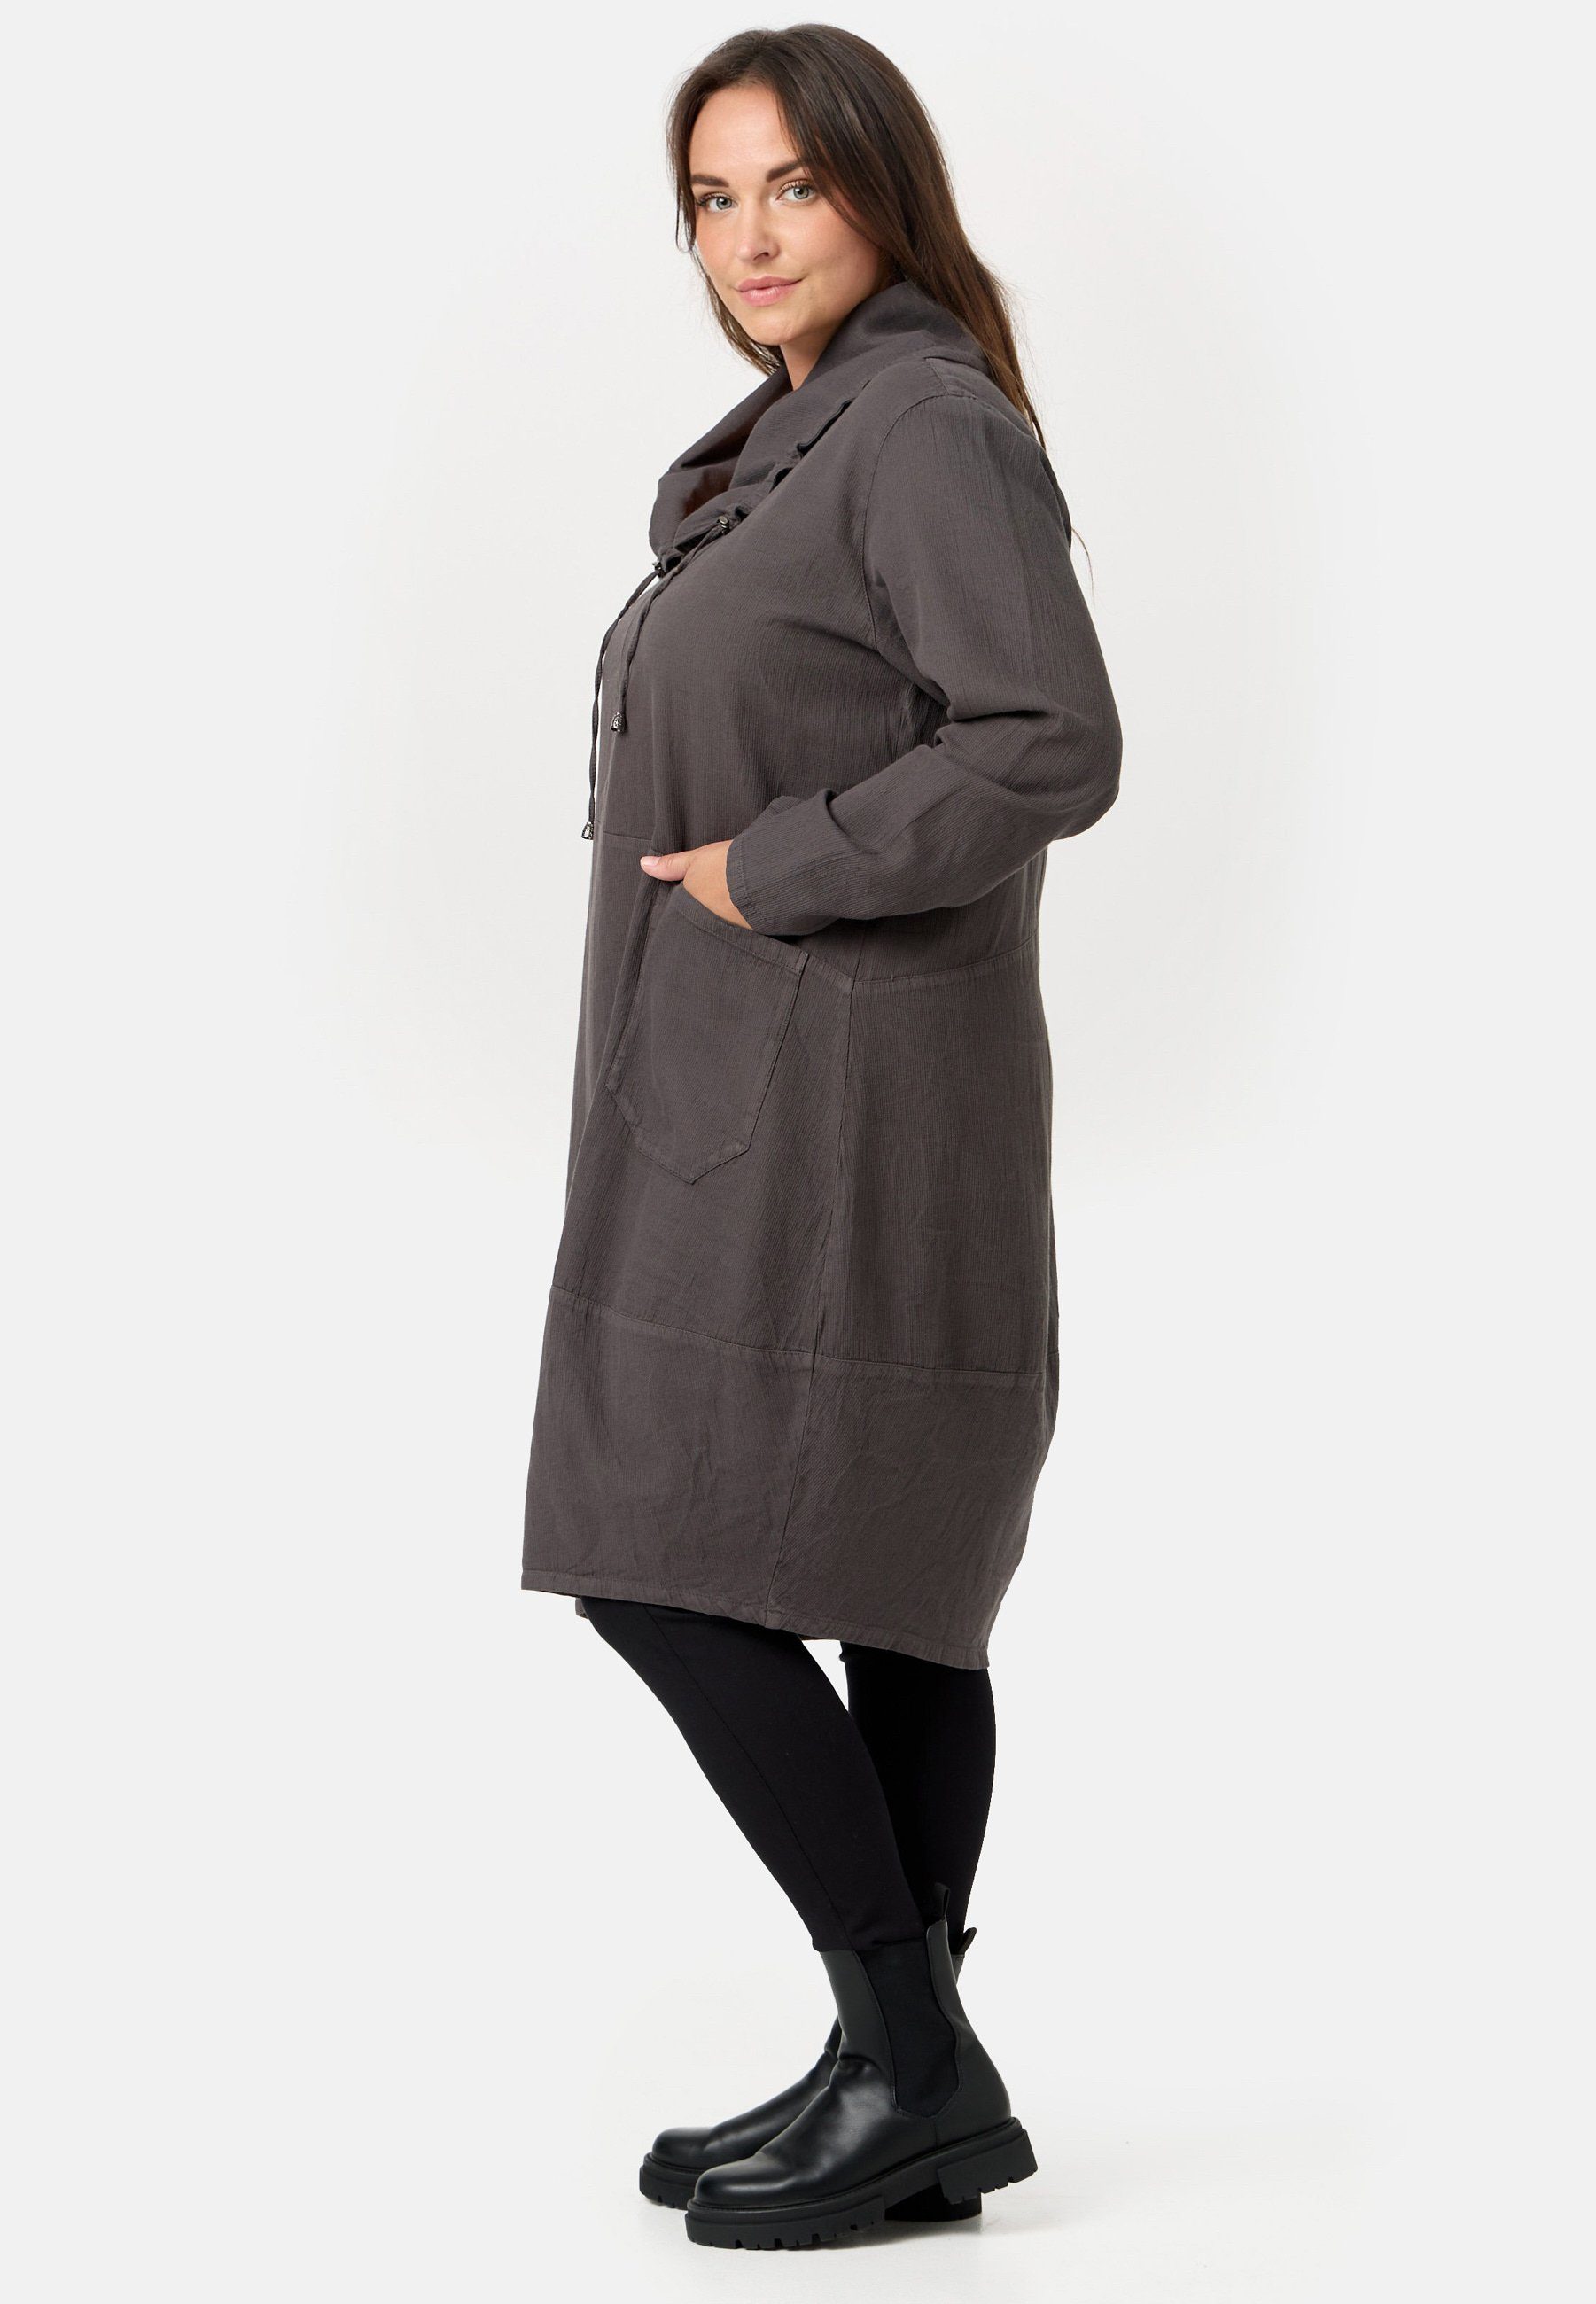 Kekoo A-Linien-Kleid Kleid A-Linie aus Taupe Cordstoff Babycord 'Cordelia' Baumwolle 100